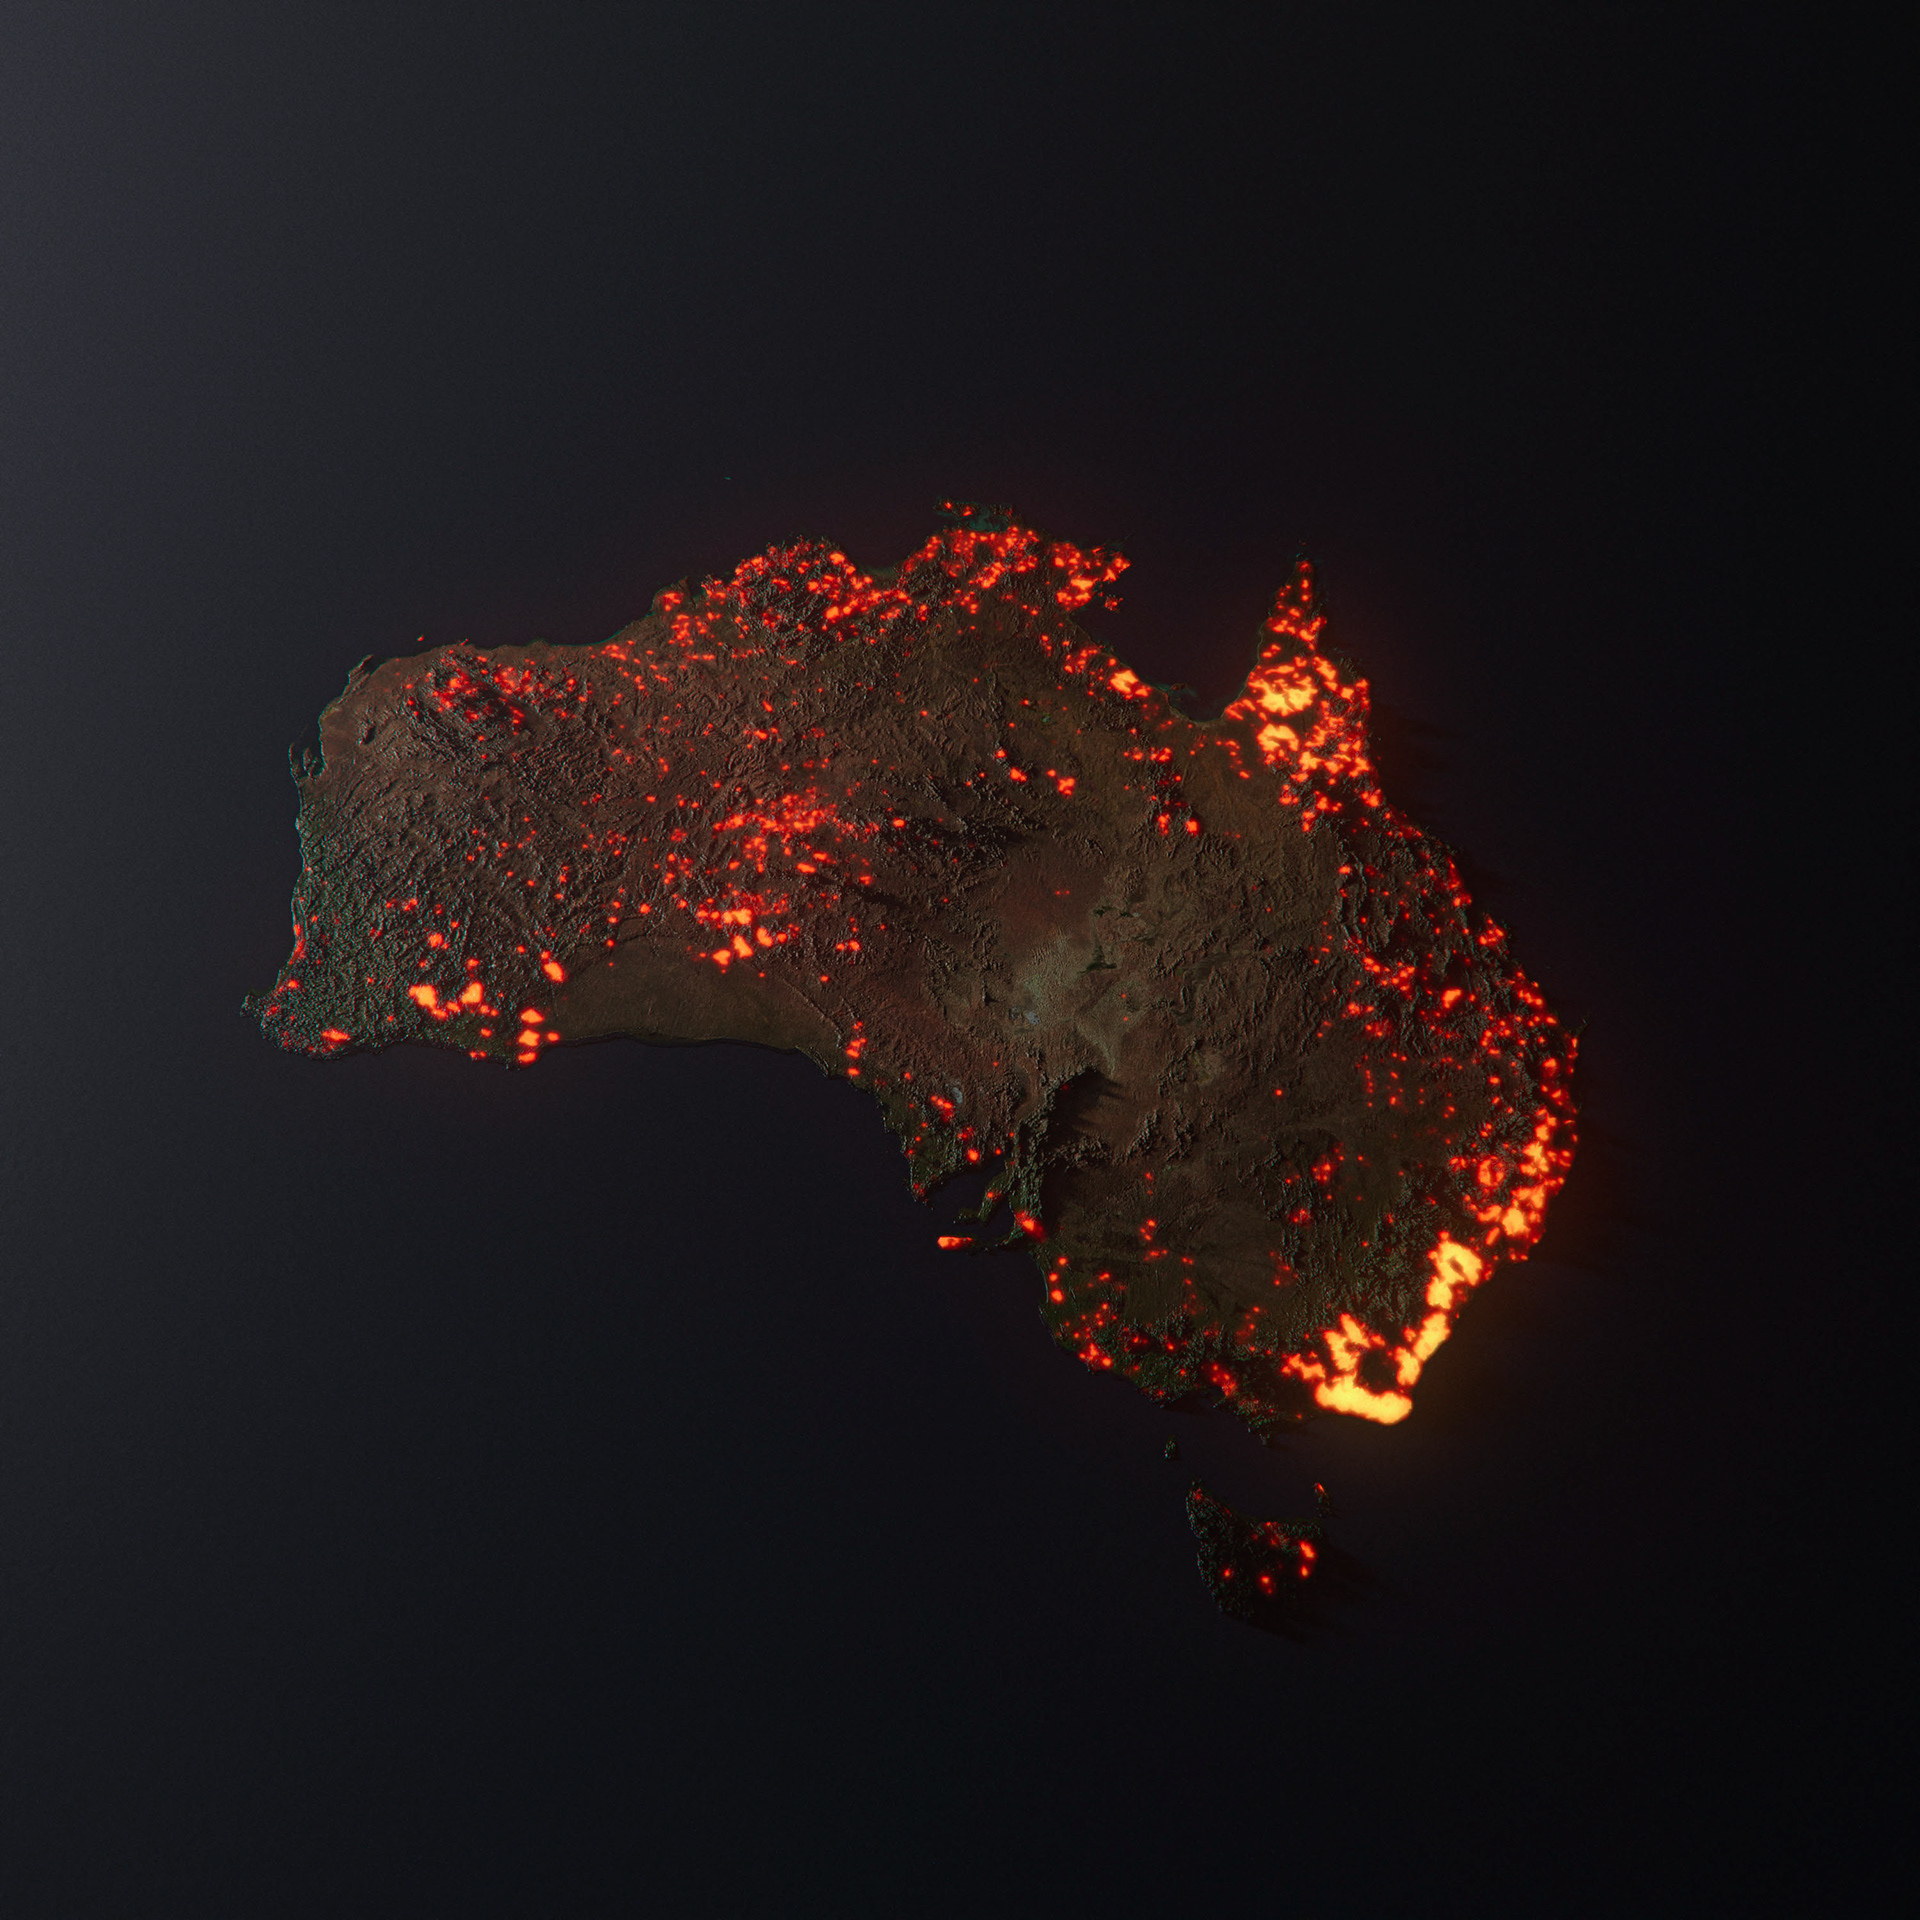 La mappa fake degli incendi australiani che fa il giro del web